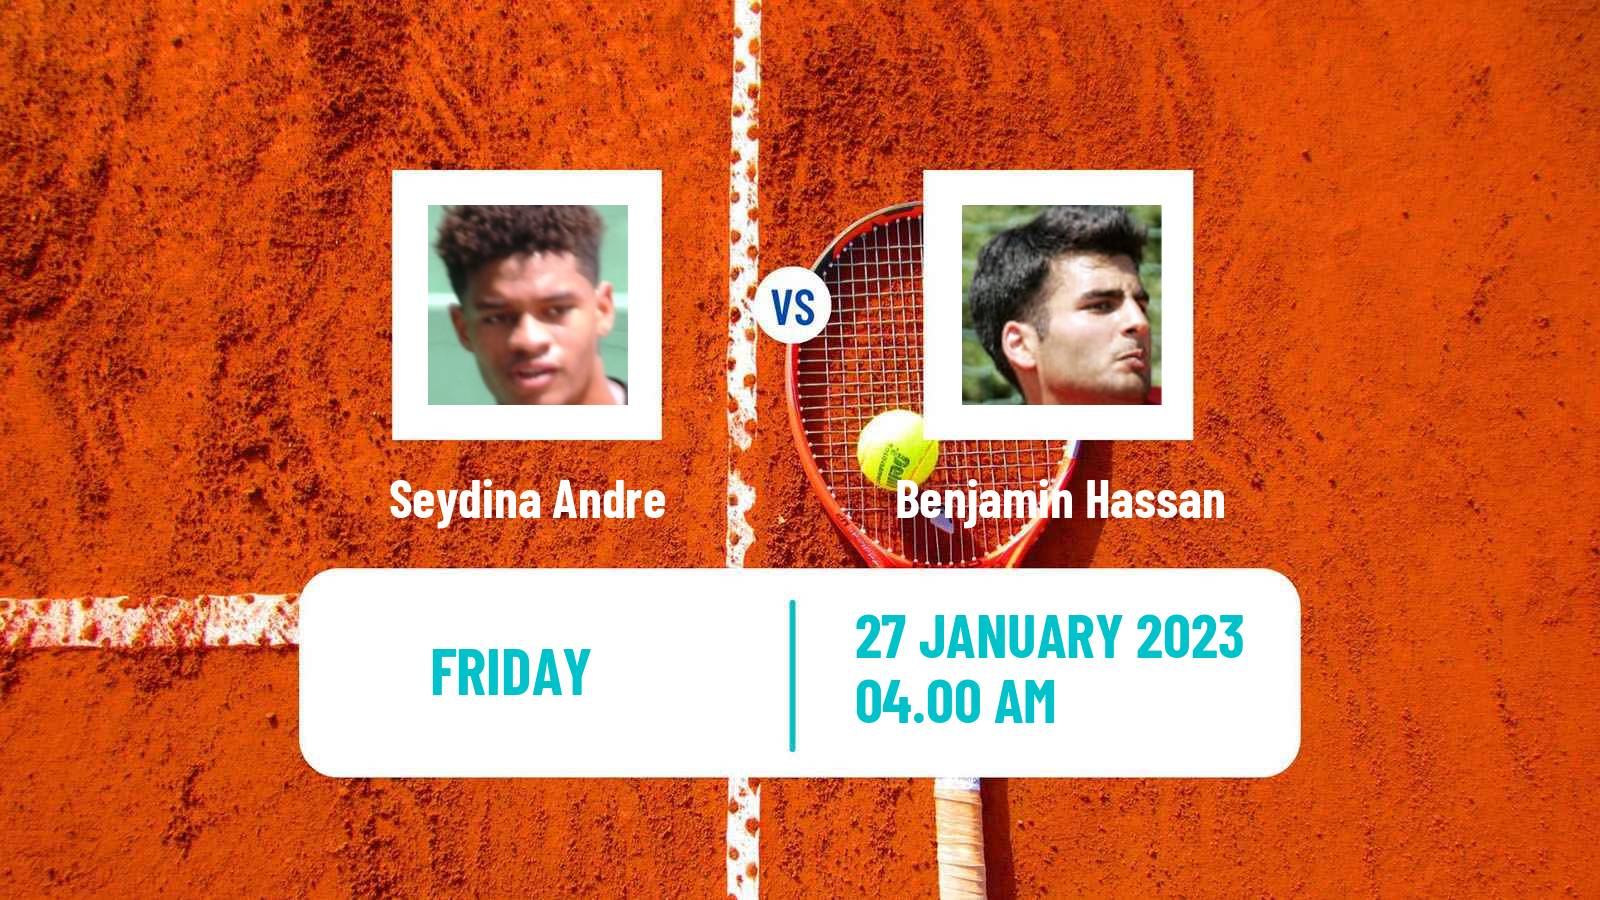 Tennis ITF Tournaments Seydina Andre - Benjamin Hassan